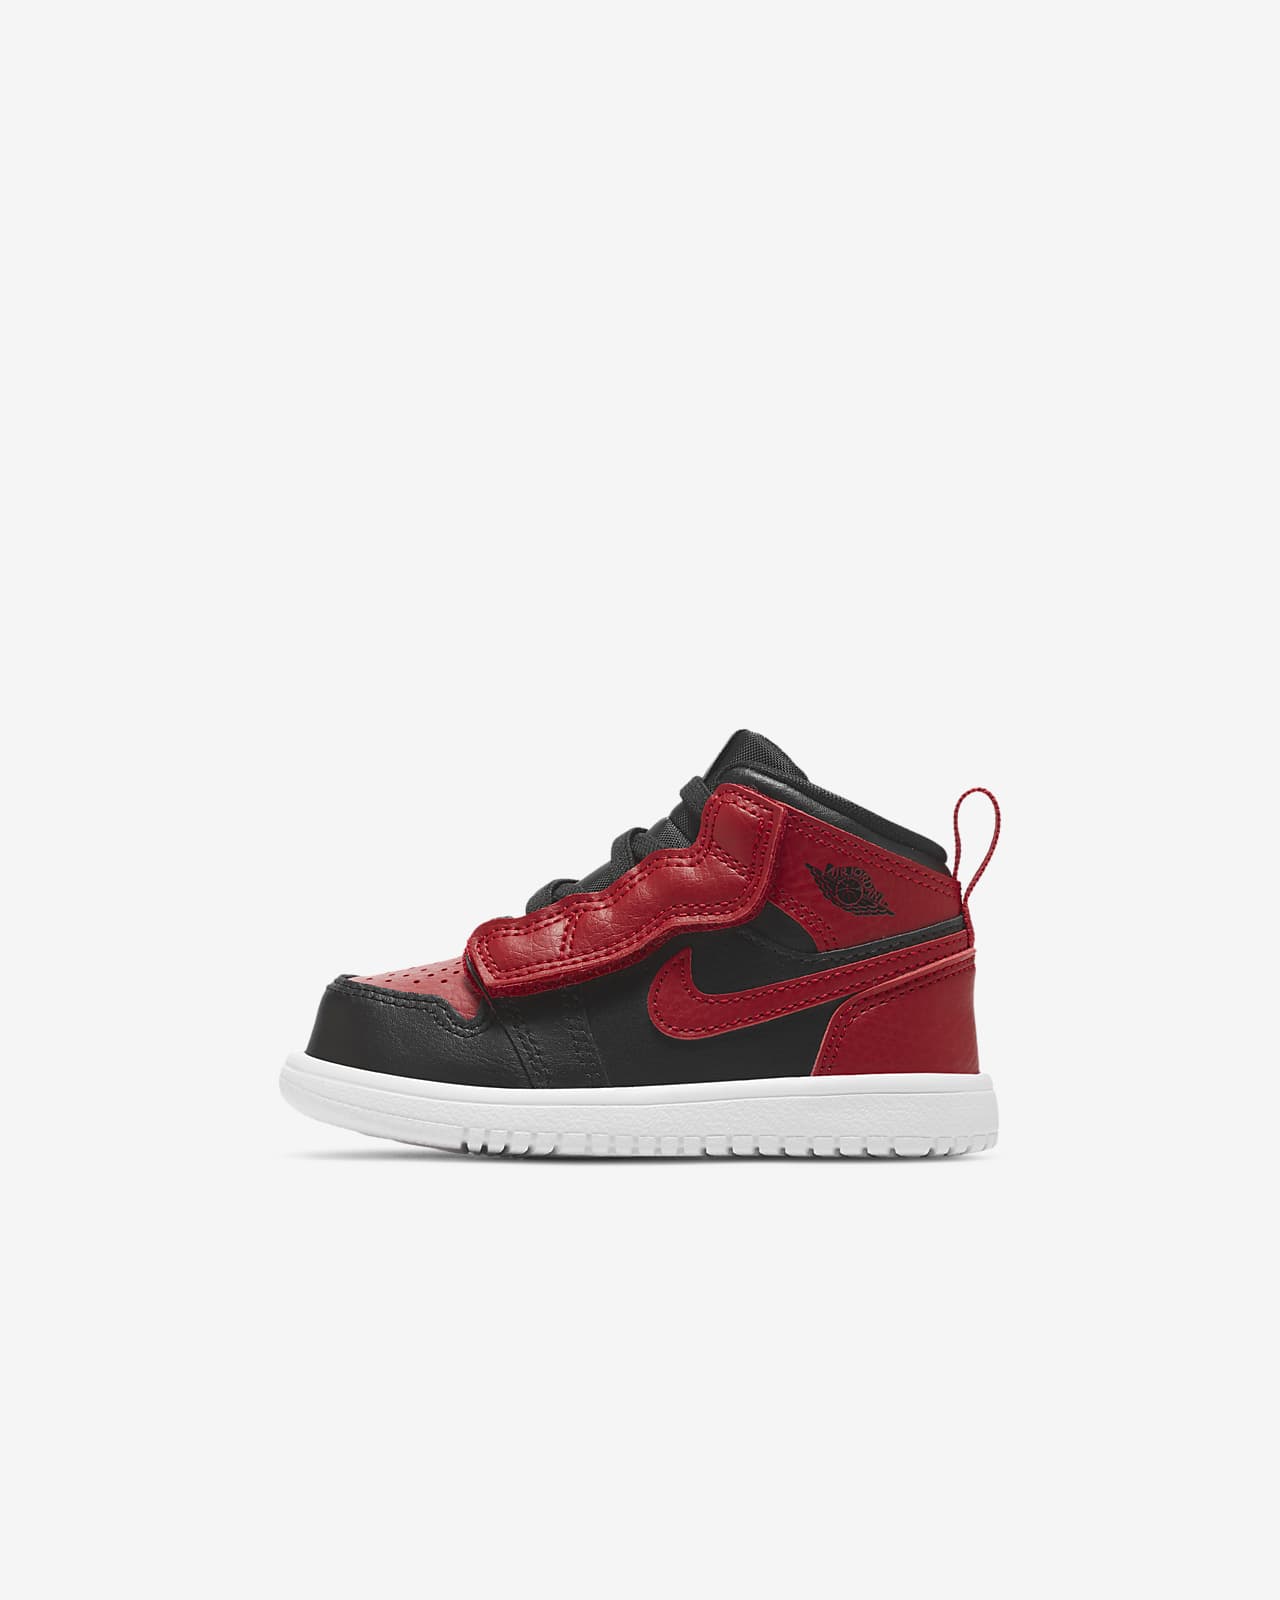 Jordan 1 Mid Baby and Toddler Shoe. Nike AE